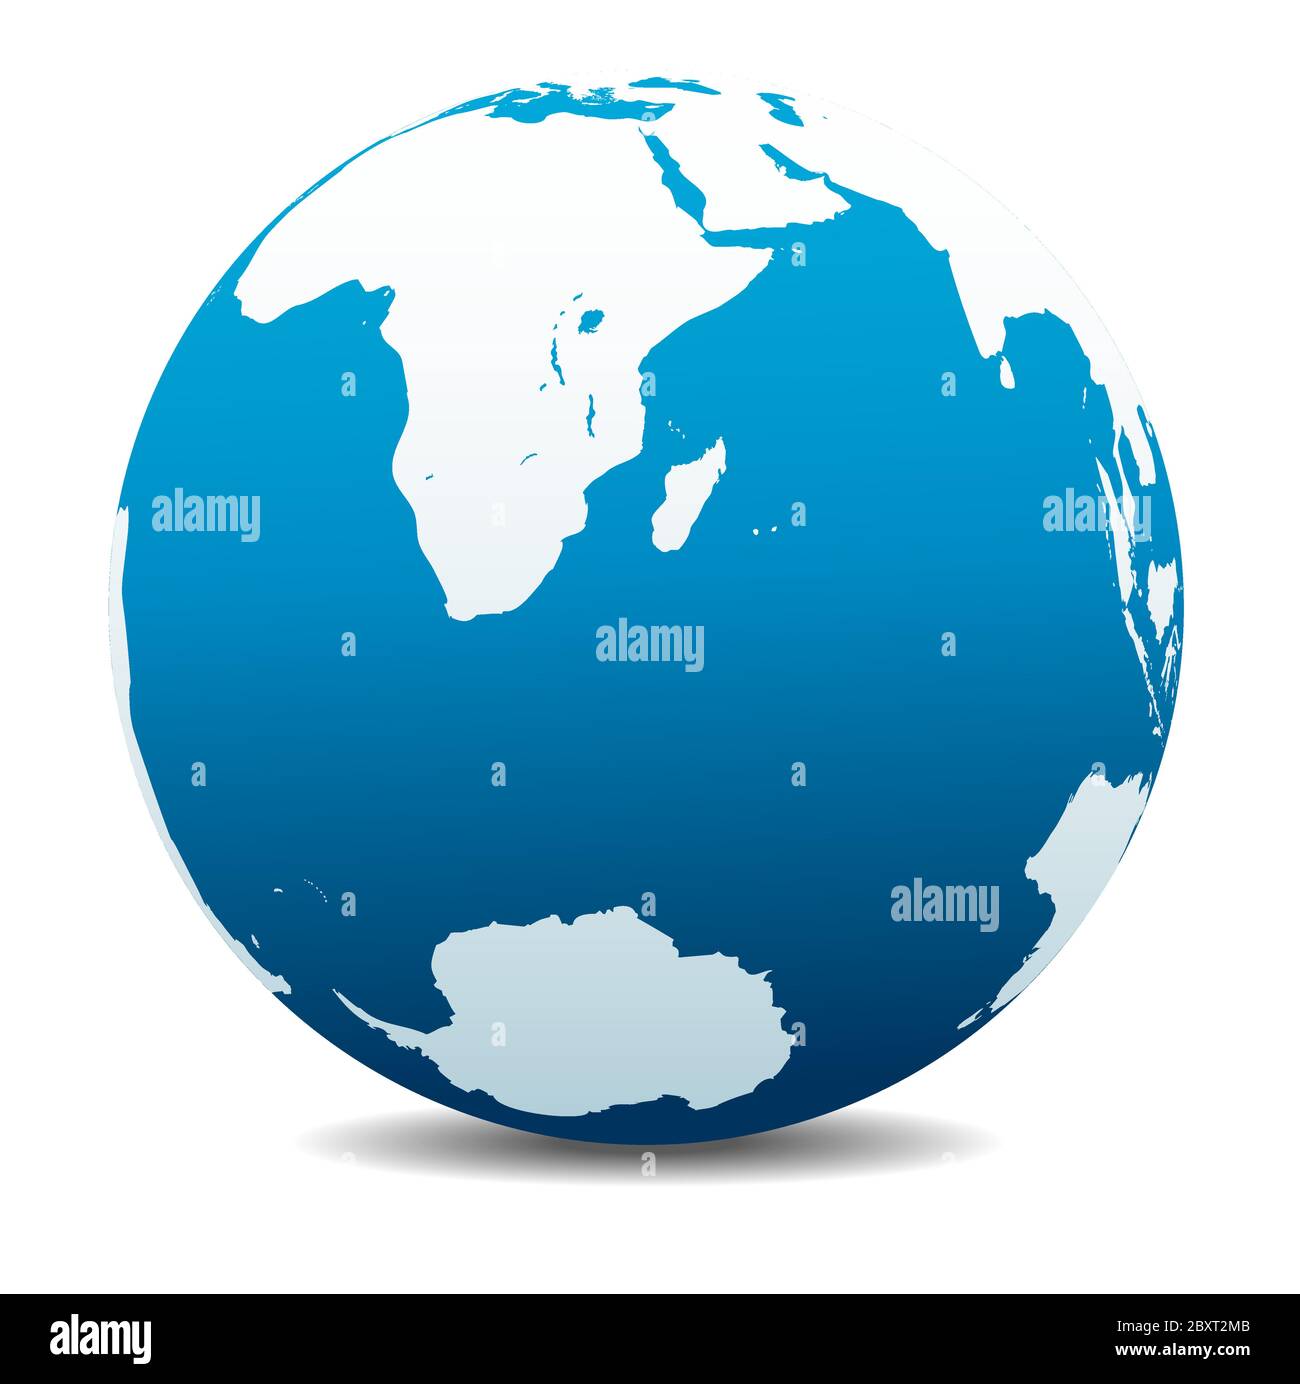 Afrique du Sud, Madagascar et le pôle Sud. Icône carte vectorielle du globe terrestre, Terre. Tous les éléments se trouvent sur des calques individuels dans le fichier vectoriel. Illustration de Vecteur